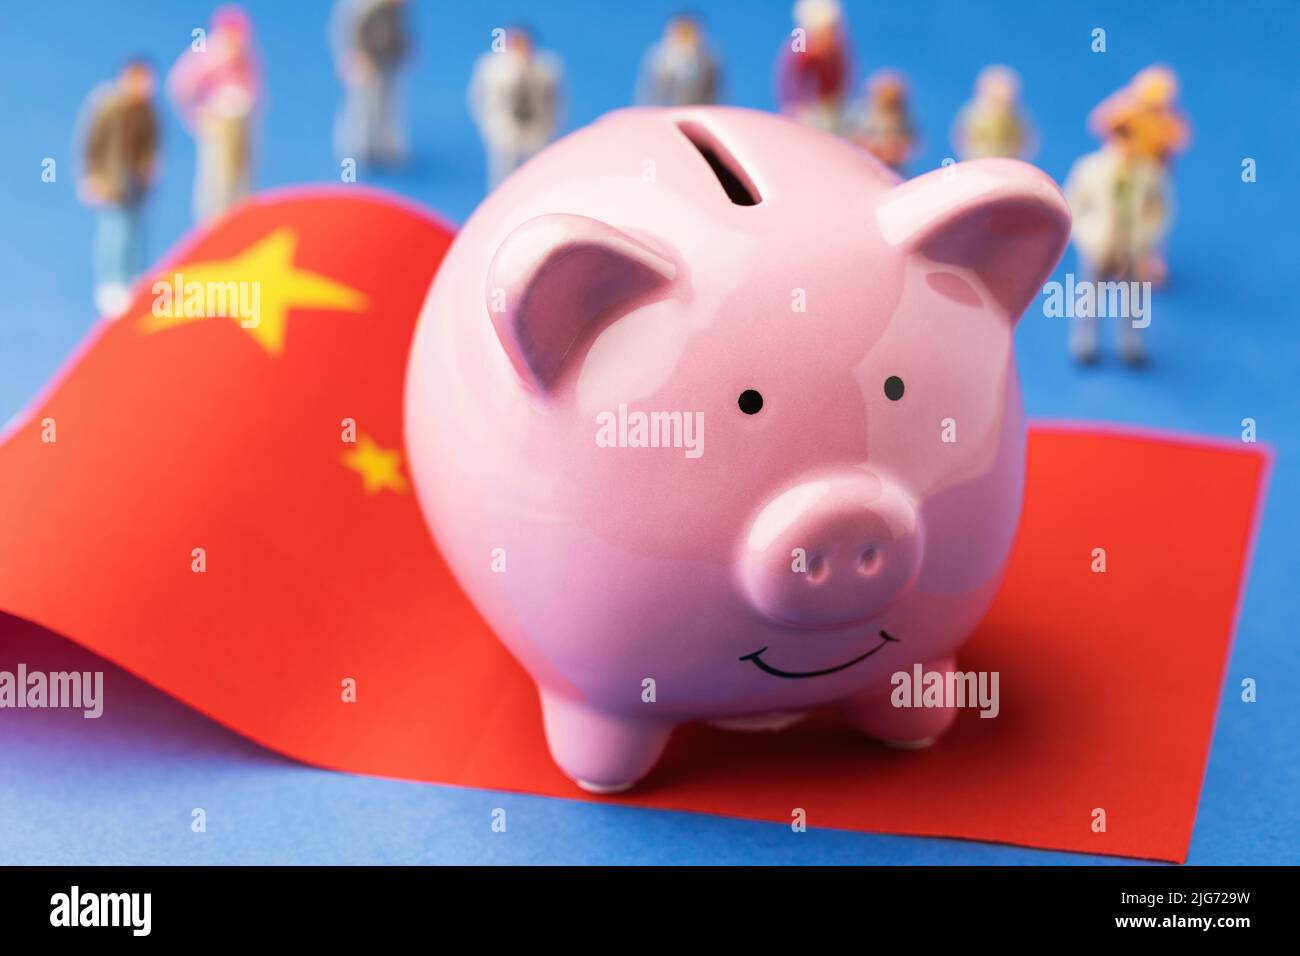 Banco de cerdos, bandera china y juguetes de plástico sobre un fondo de color, un concepto sobre el tema de los ingresos en China Foto de stock